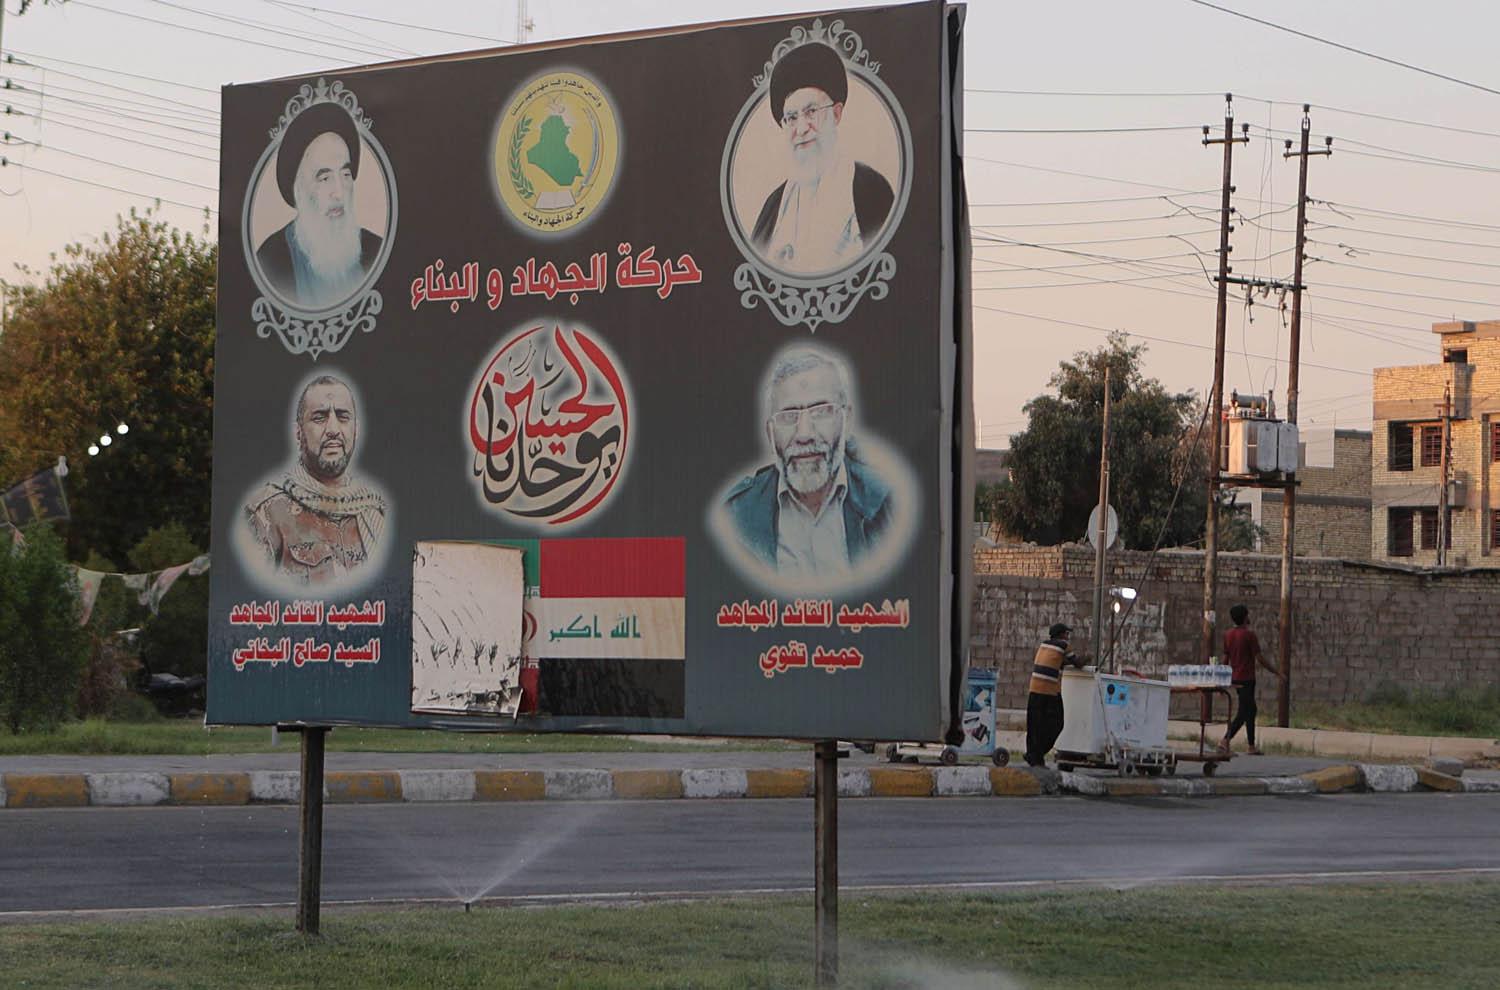 لوحات اعلانية وسط بغداد ترفع شعارات إيرانية